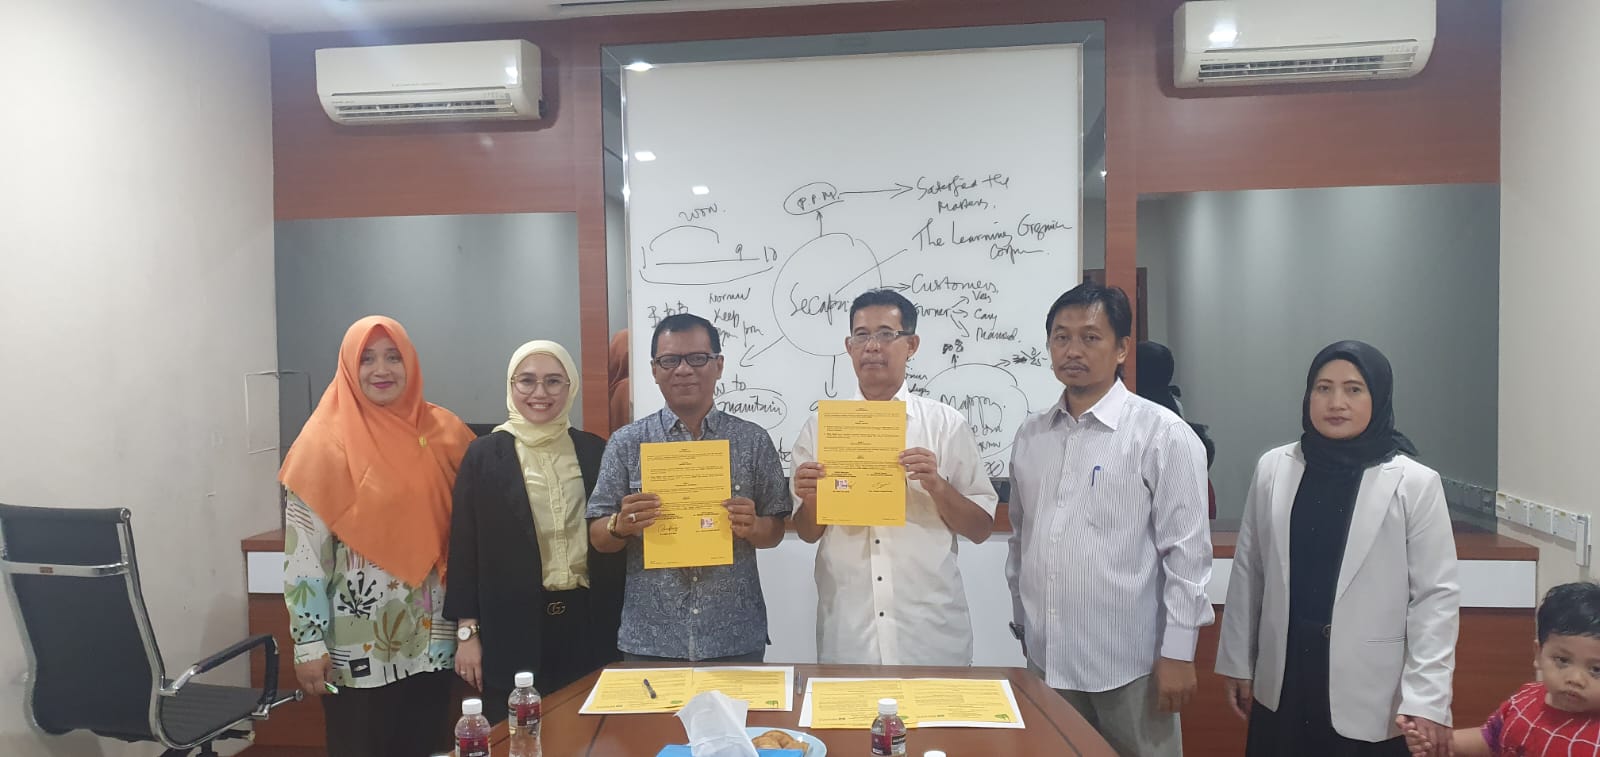 Perjanjian Kerjasama Antara Fakultas Ekonomi Dan Bisnis Universitas Ibnu Sina Dengan PT. Segara Catur Perkasa